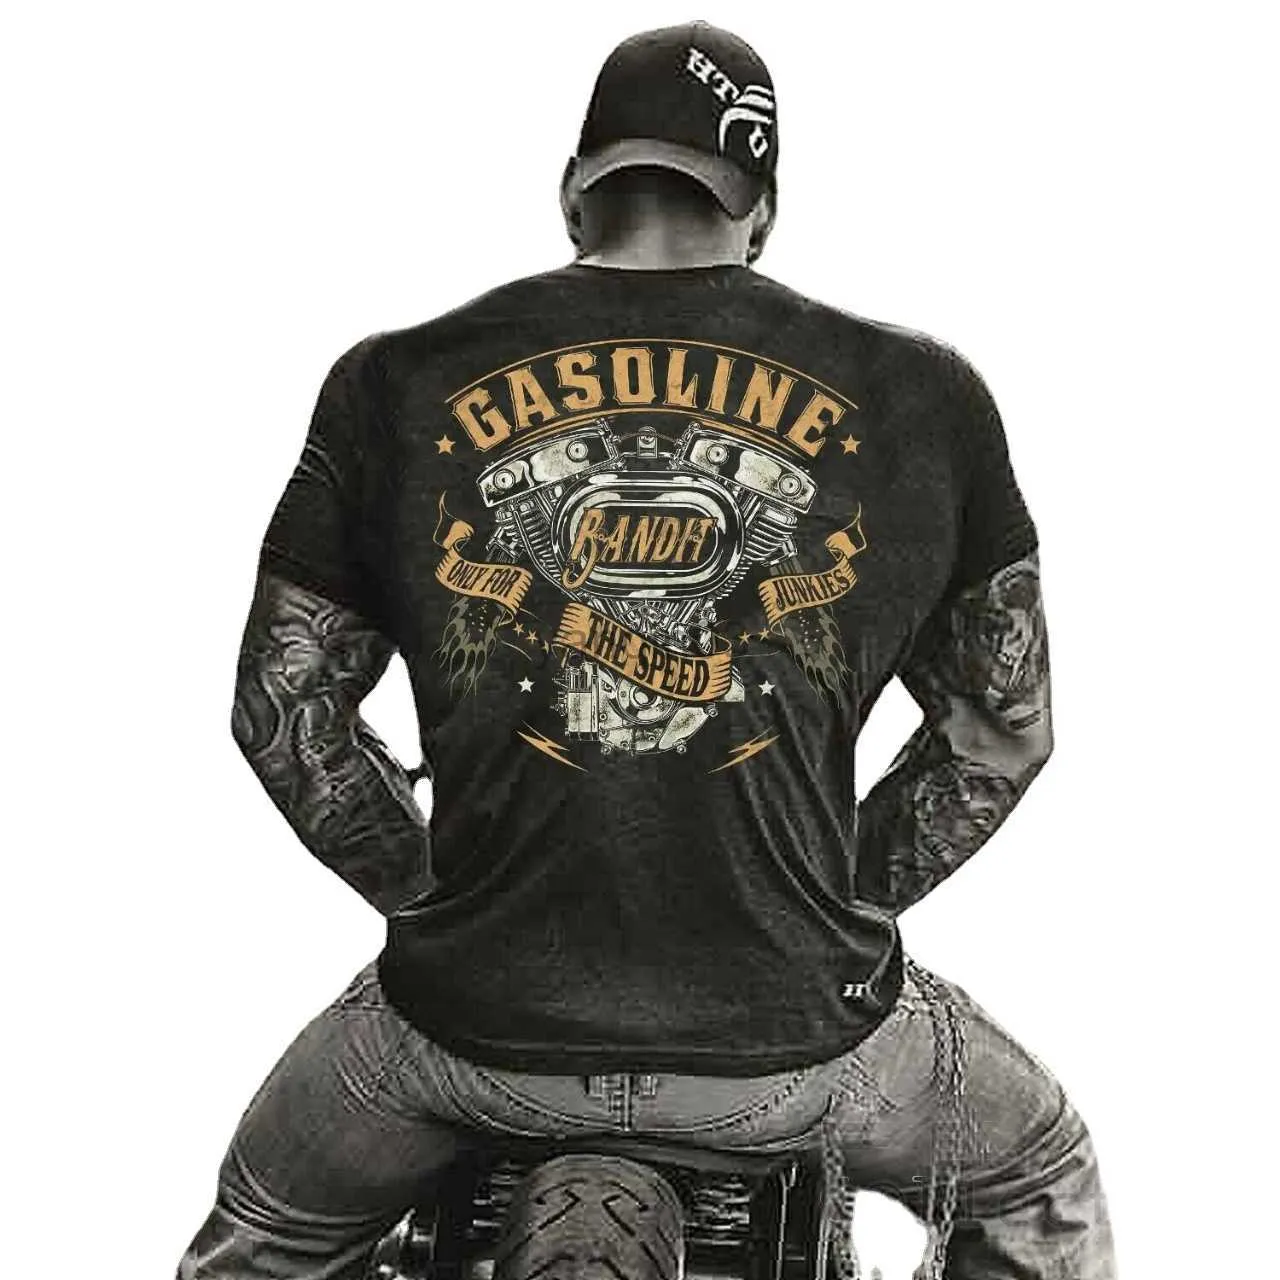 Heren T-shirts Respect voor motorrijders Benzine V-Twin Motorcycle Chopper Motorrijder T-shirt. 100% Katoen Casual T-shirts Losse Top Maat S-3XL J230602